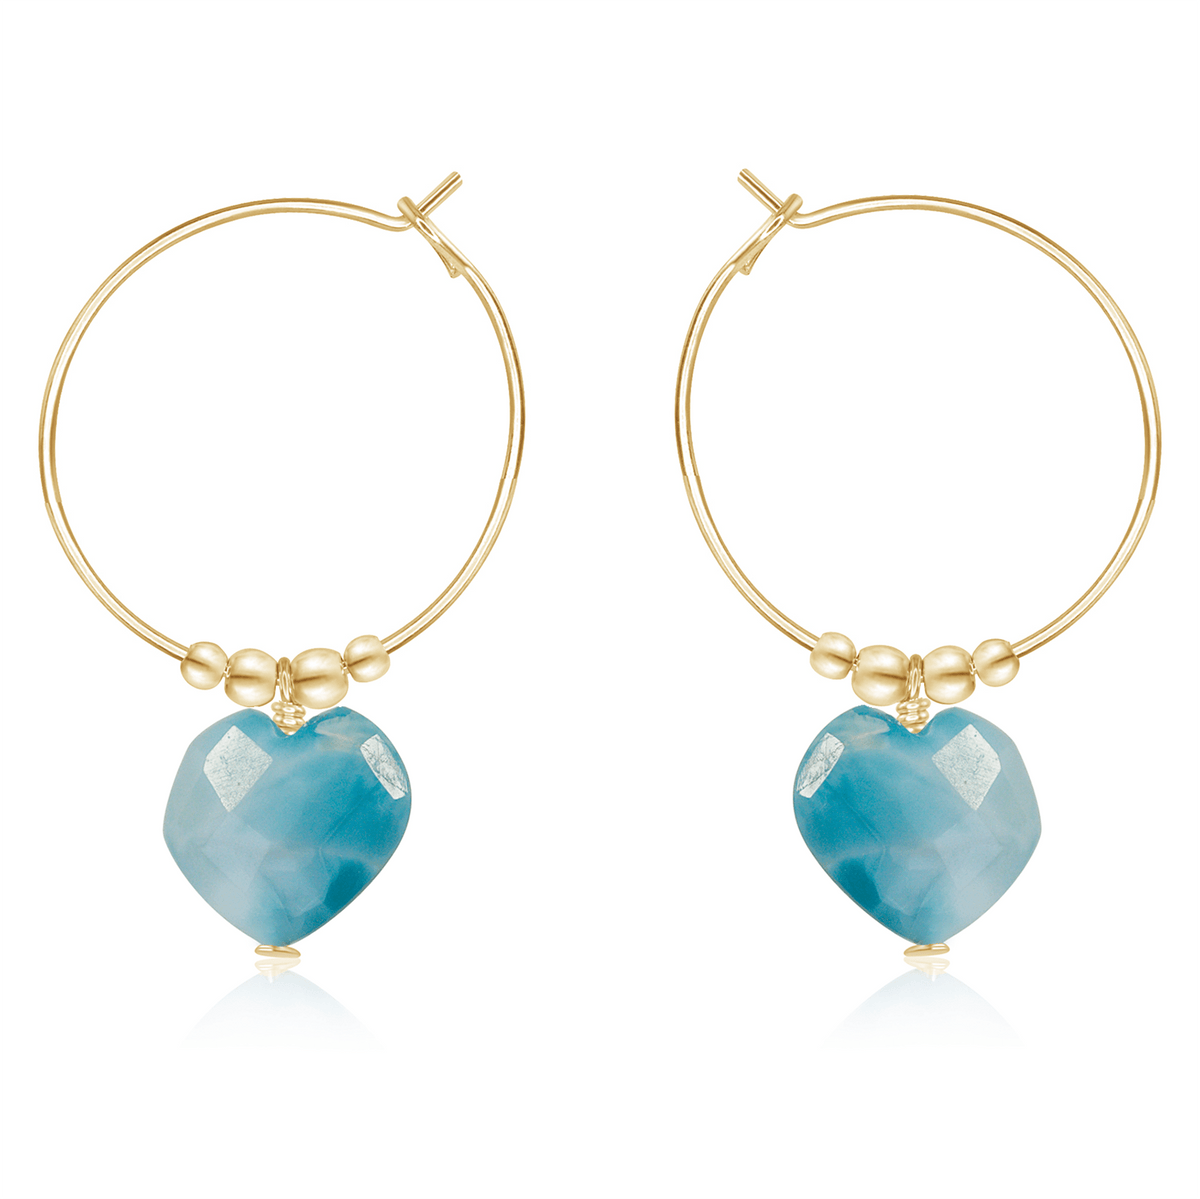 Larimar Crystal Heart Dangle Hoop Earrings - Larimar Crystal Heart Dangle Hoop Earrings - 14k Gold Fill - Luna Tide Handmade Crystal Jewellery